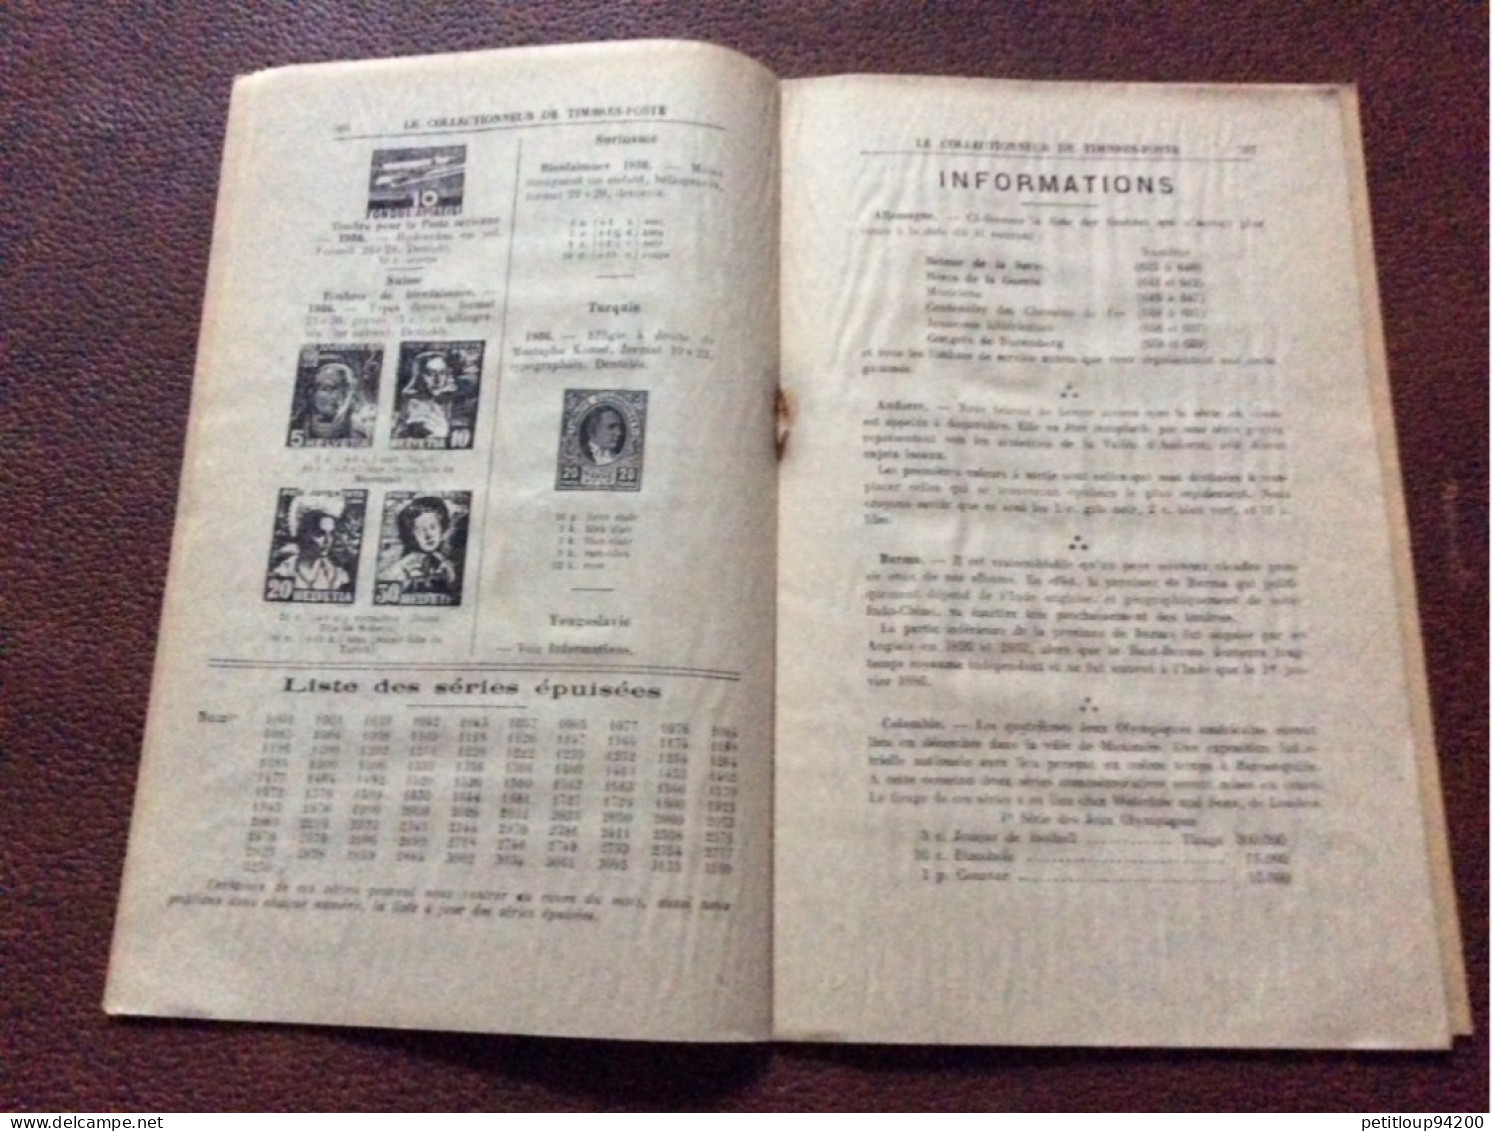 LE COLLECTIONNEUR de Timbres-Poste  No 596  ARTHUR MAURY  Décembre 1936